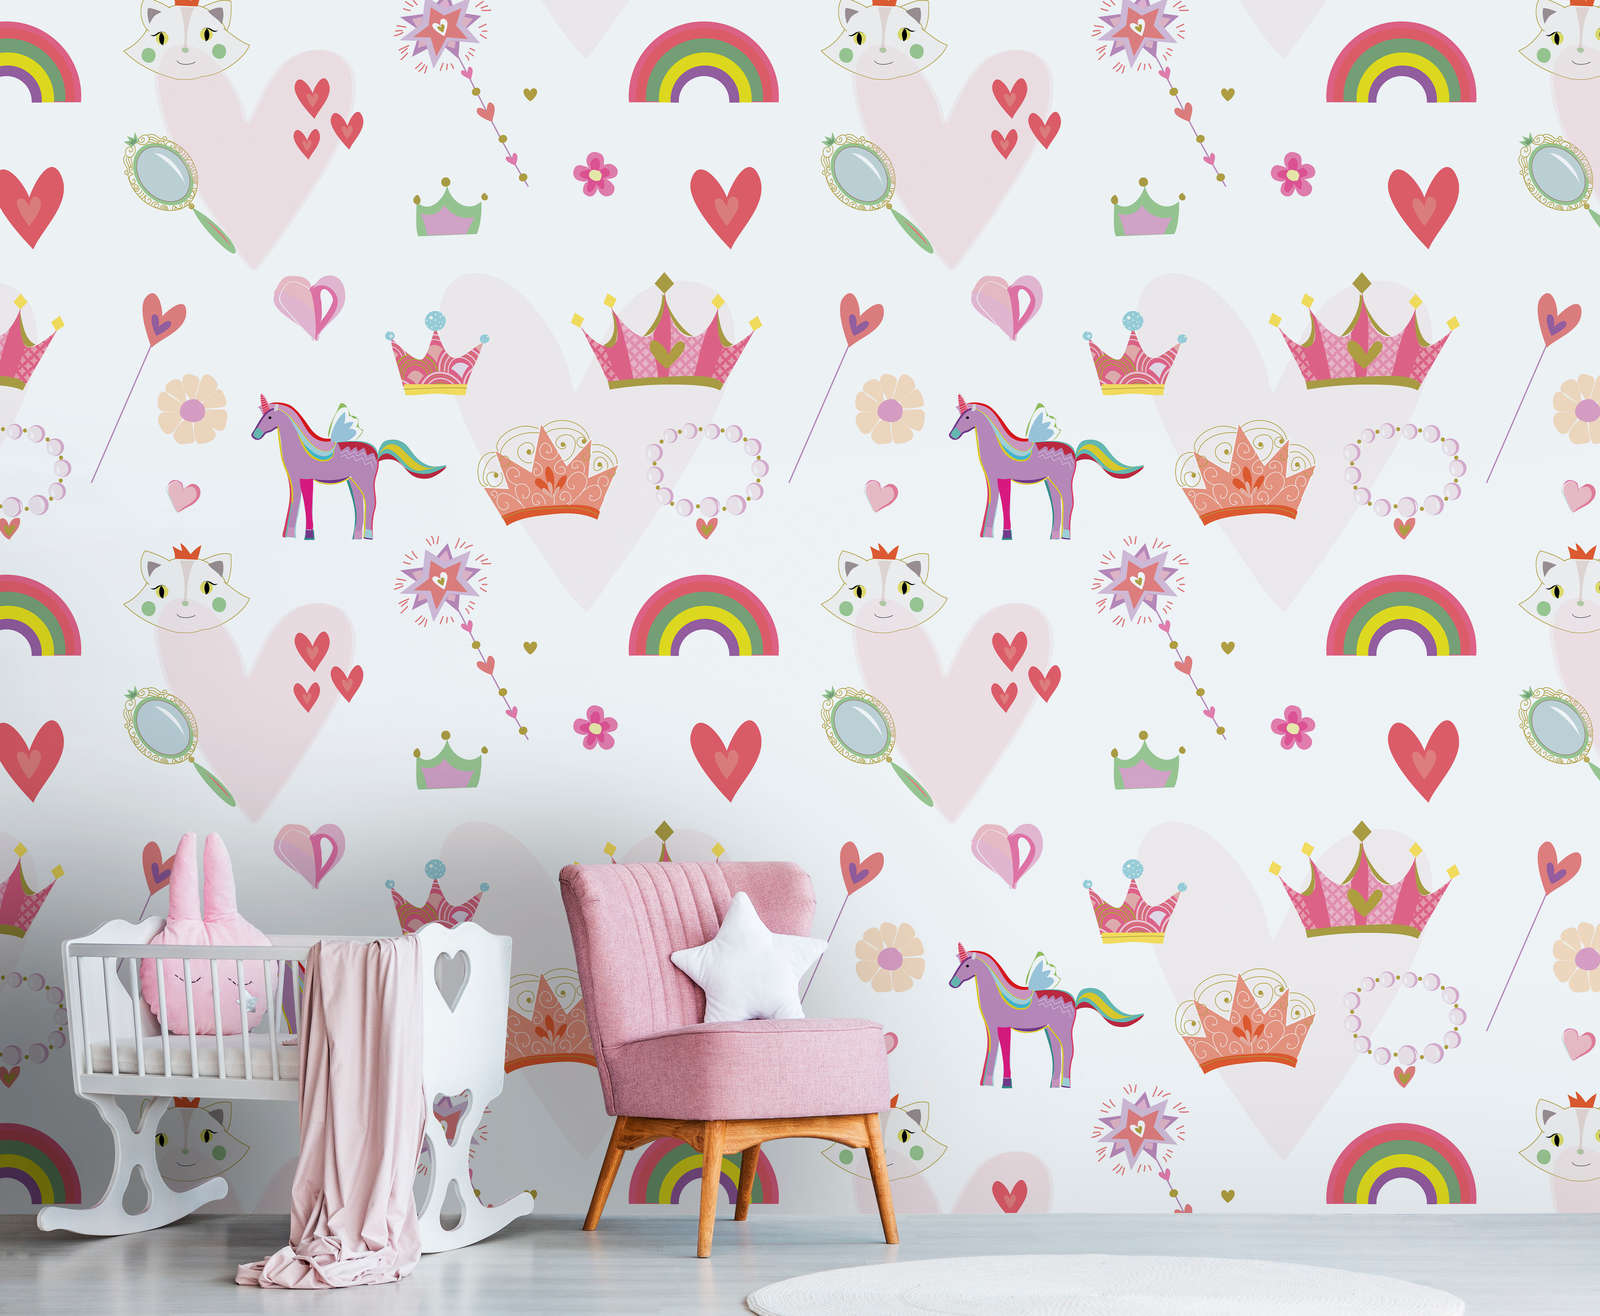             Kinderbehang in prinsessenstijl met harten en dieren - kleurrijk, roze, wit
        